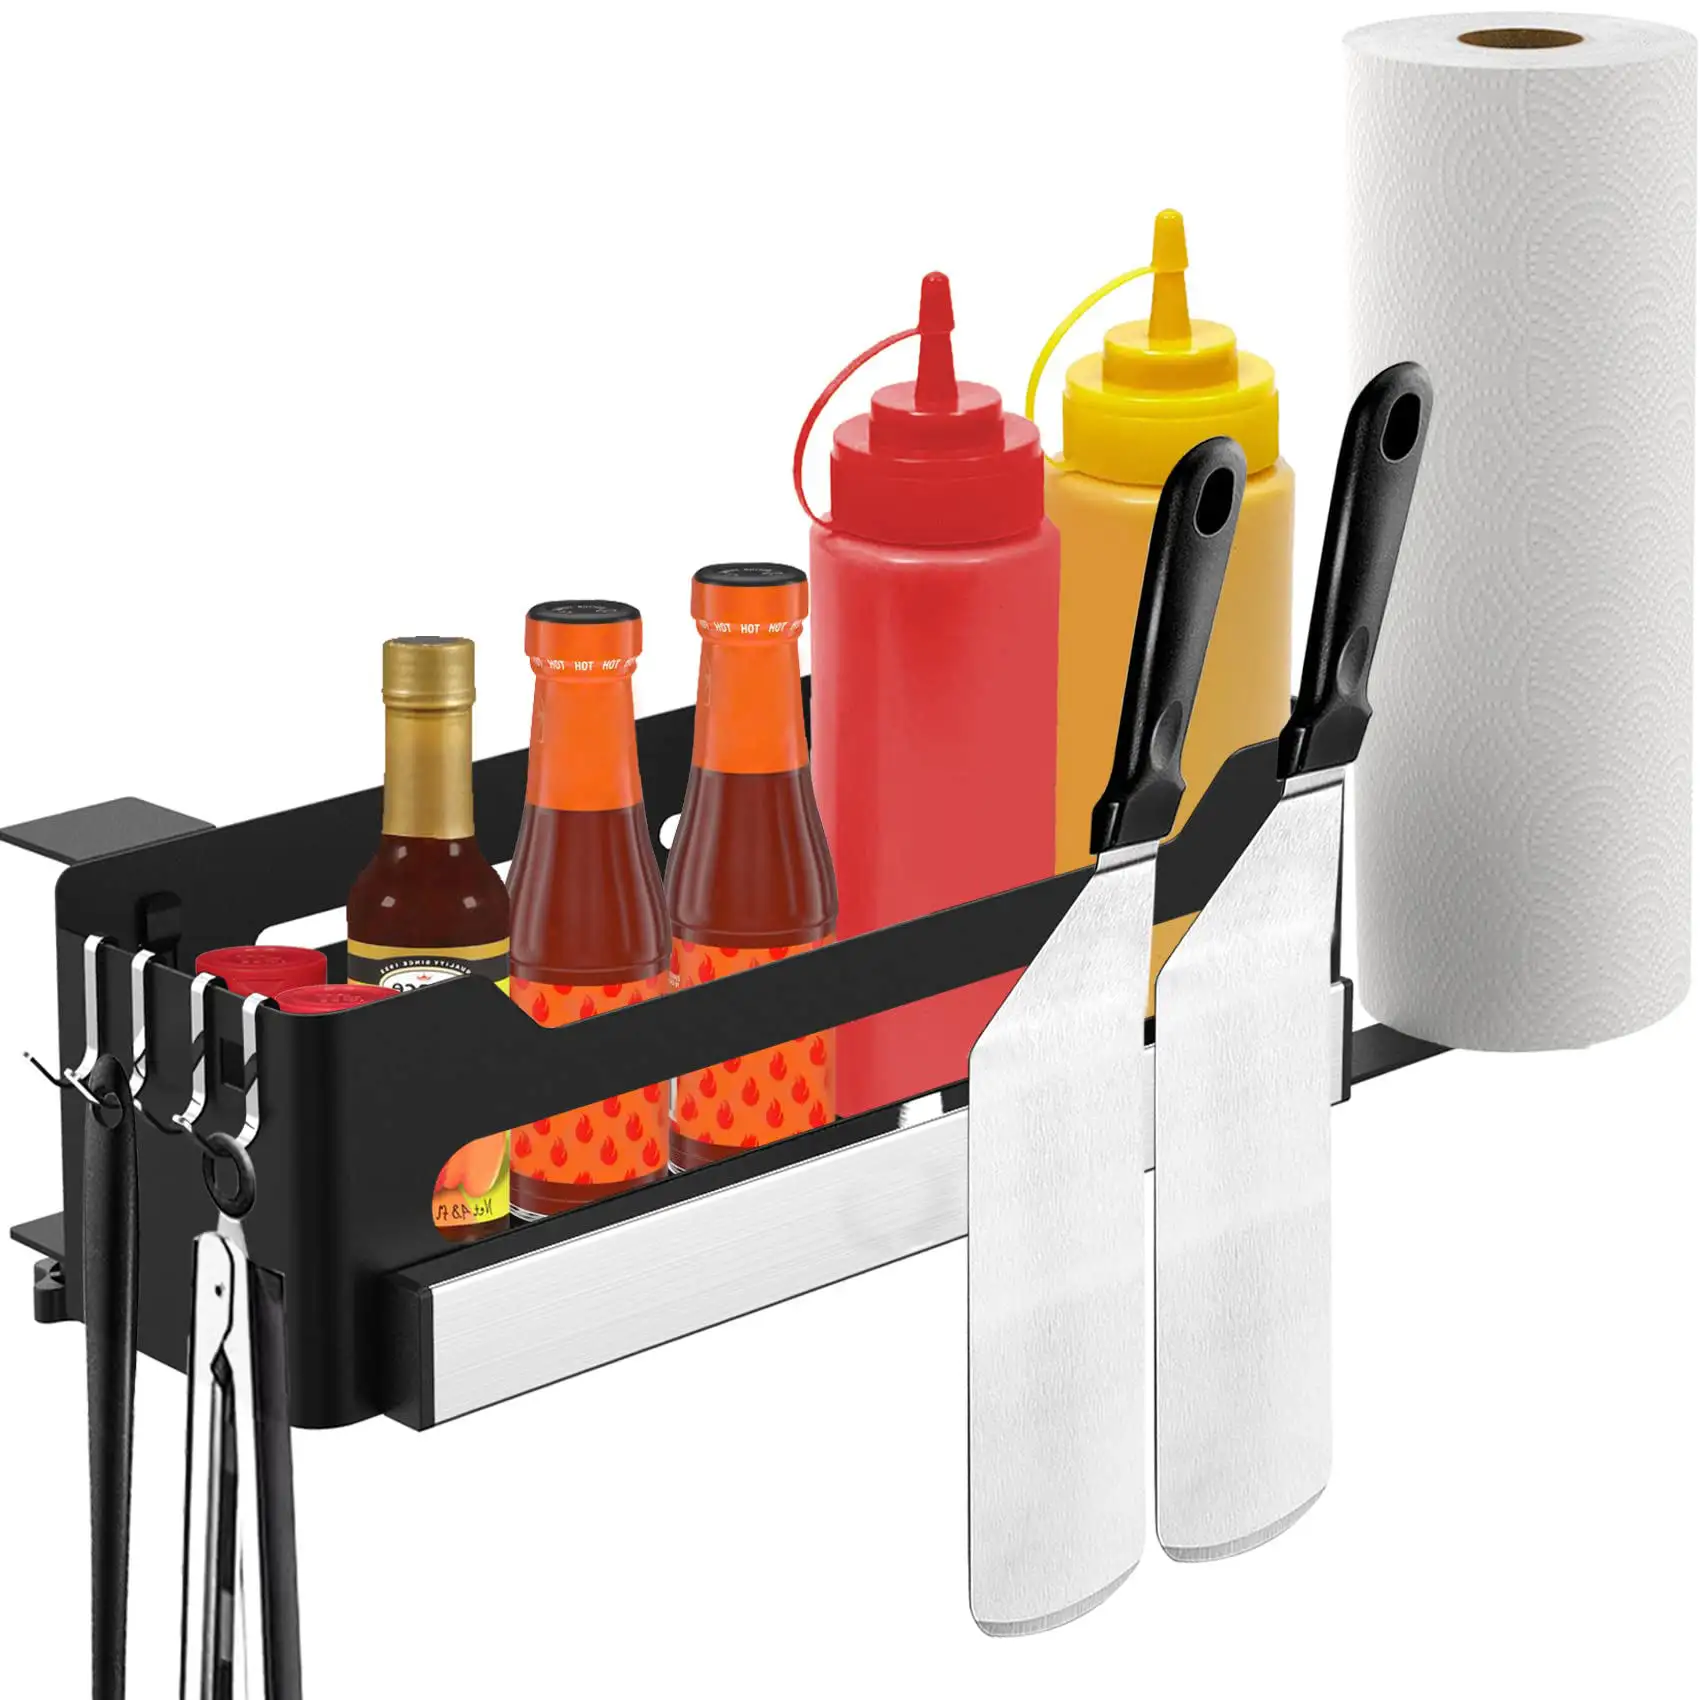 Boîte de rangement pour accessoires de barbecue Griddles Caddy avec porte-outil magnétique et porte-serviettes en papier